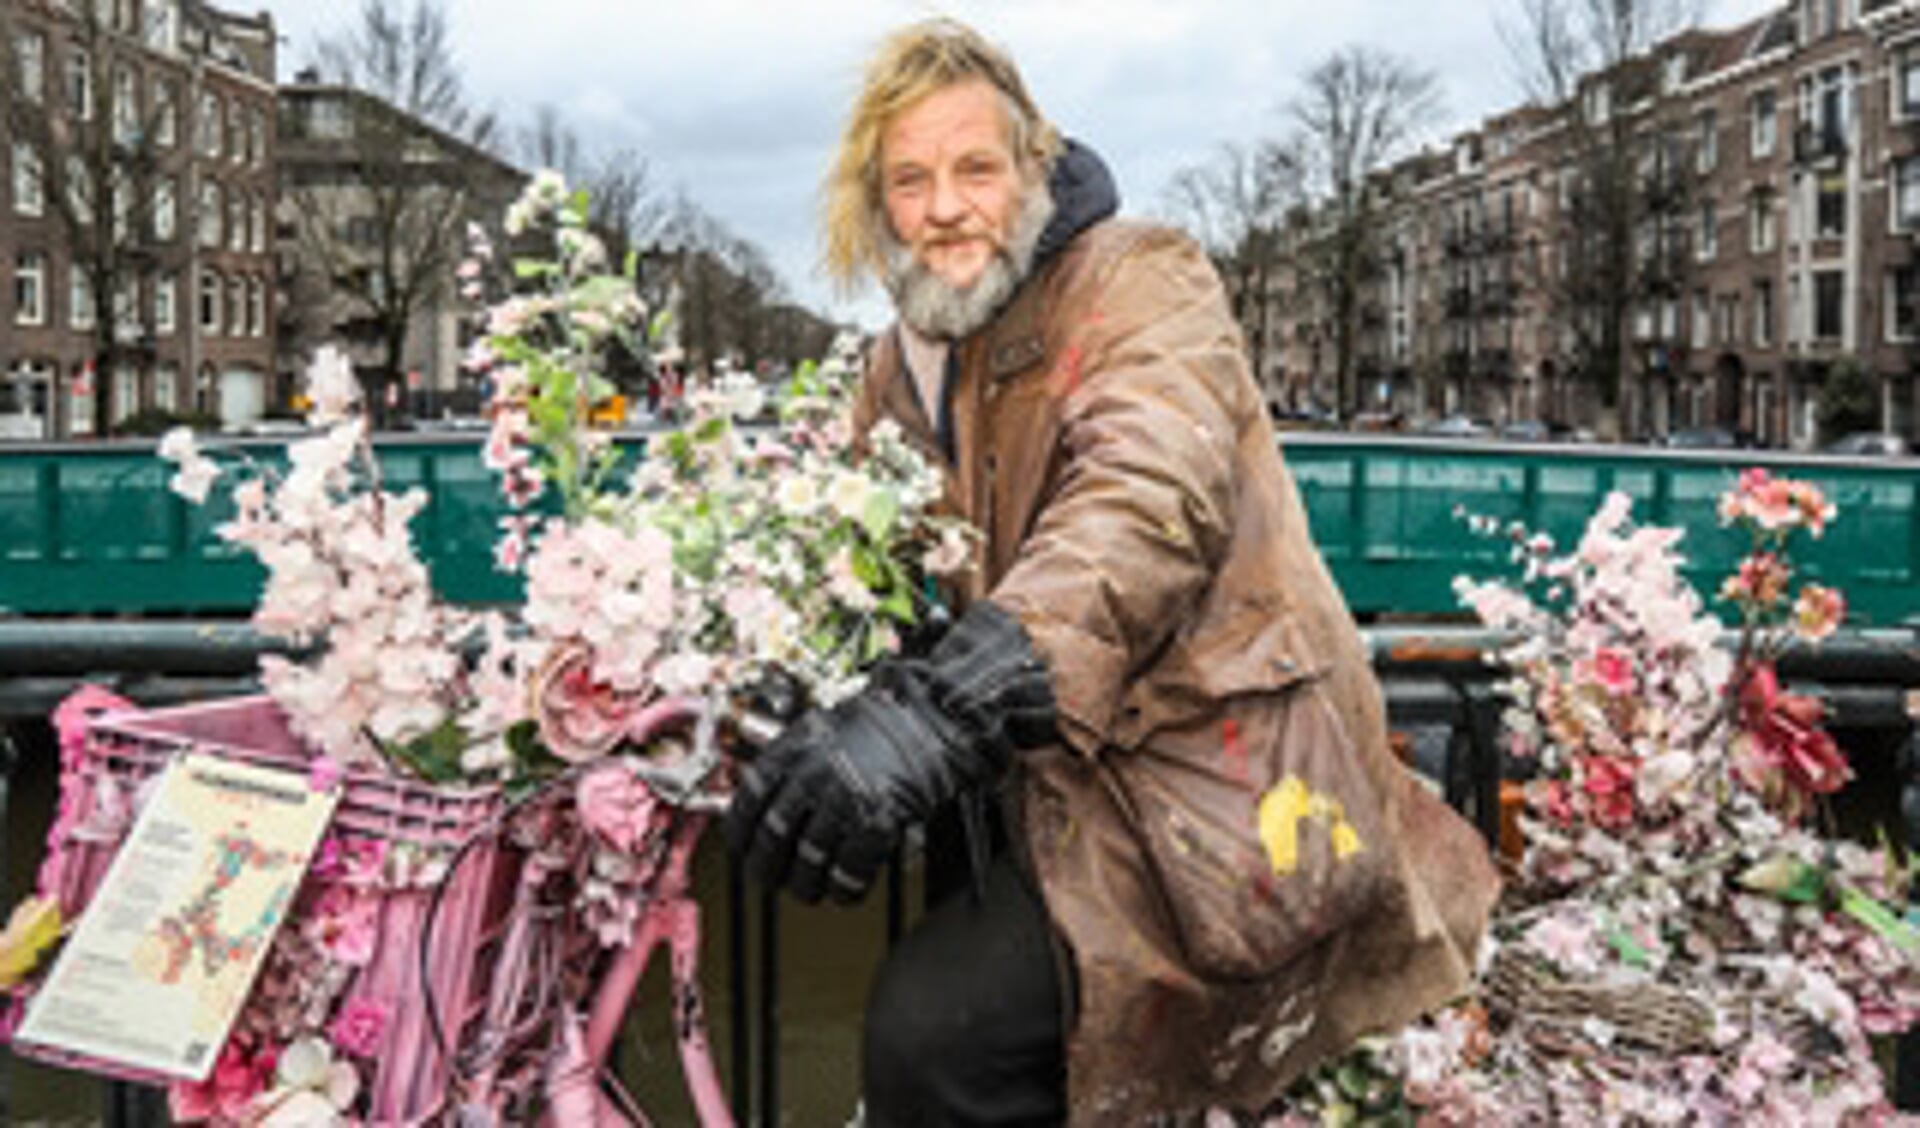 Warren Gregory fleurt Amsterdam al jaren op met zijn prachtige bloemenfietsen. 